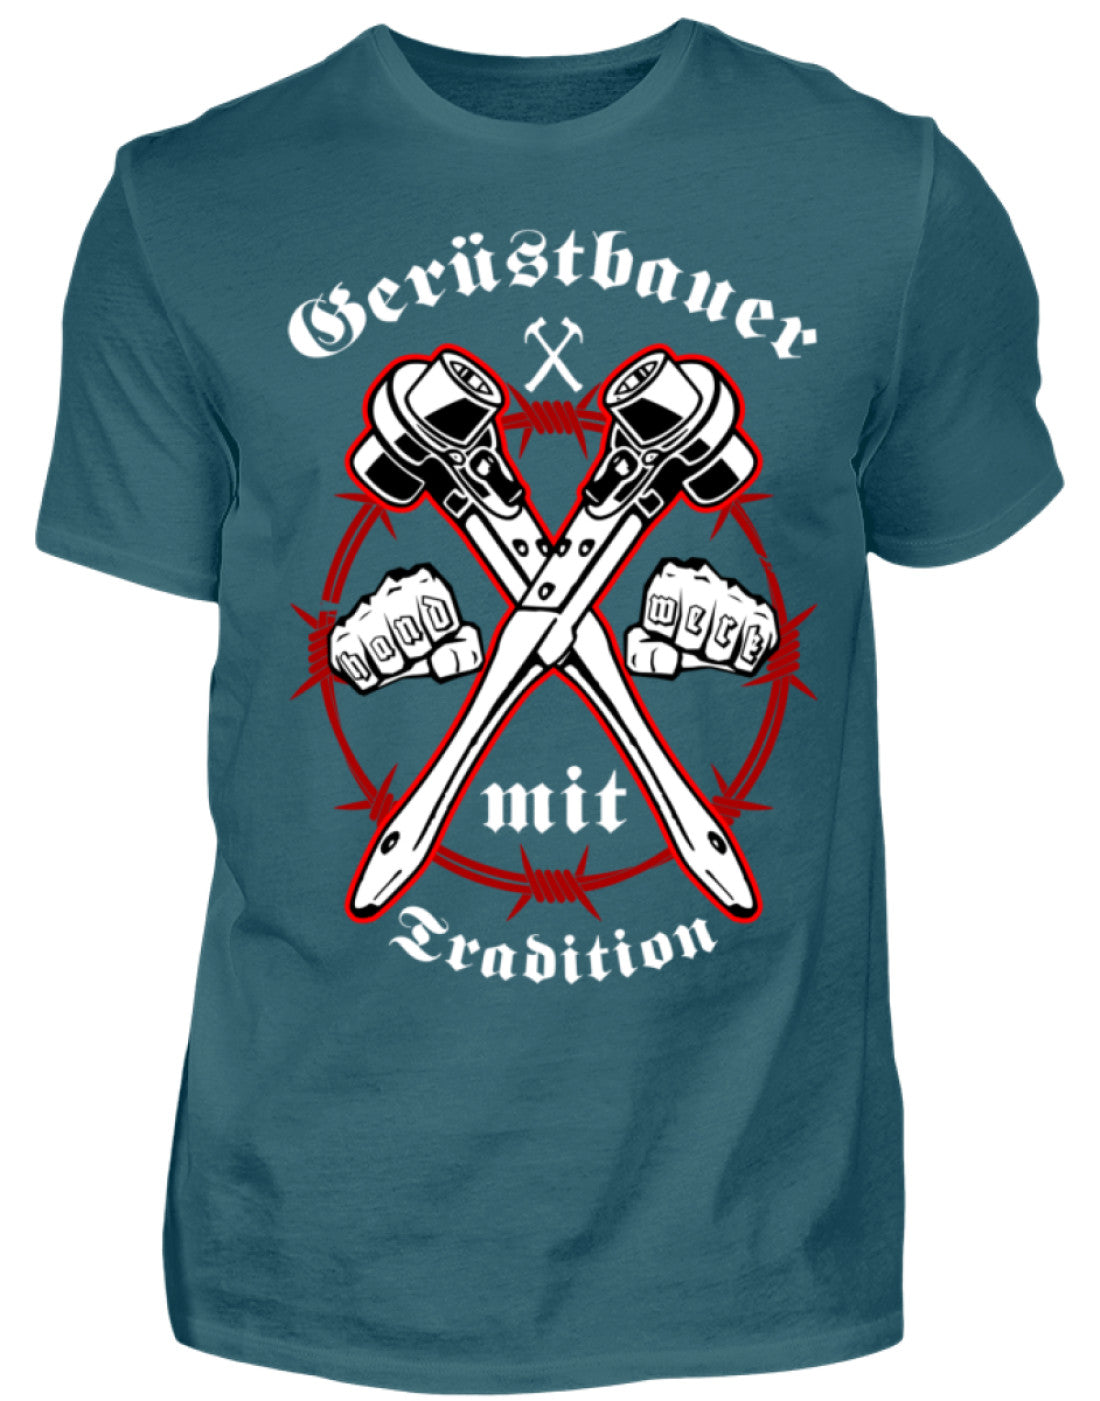 Gerüstbauer T-Shirt - Handwerk mit Tradition €21.95 Gerüstbauer - Shop >>